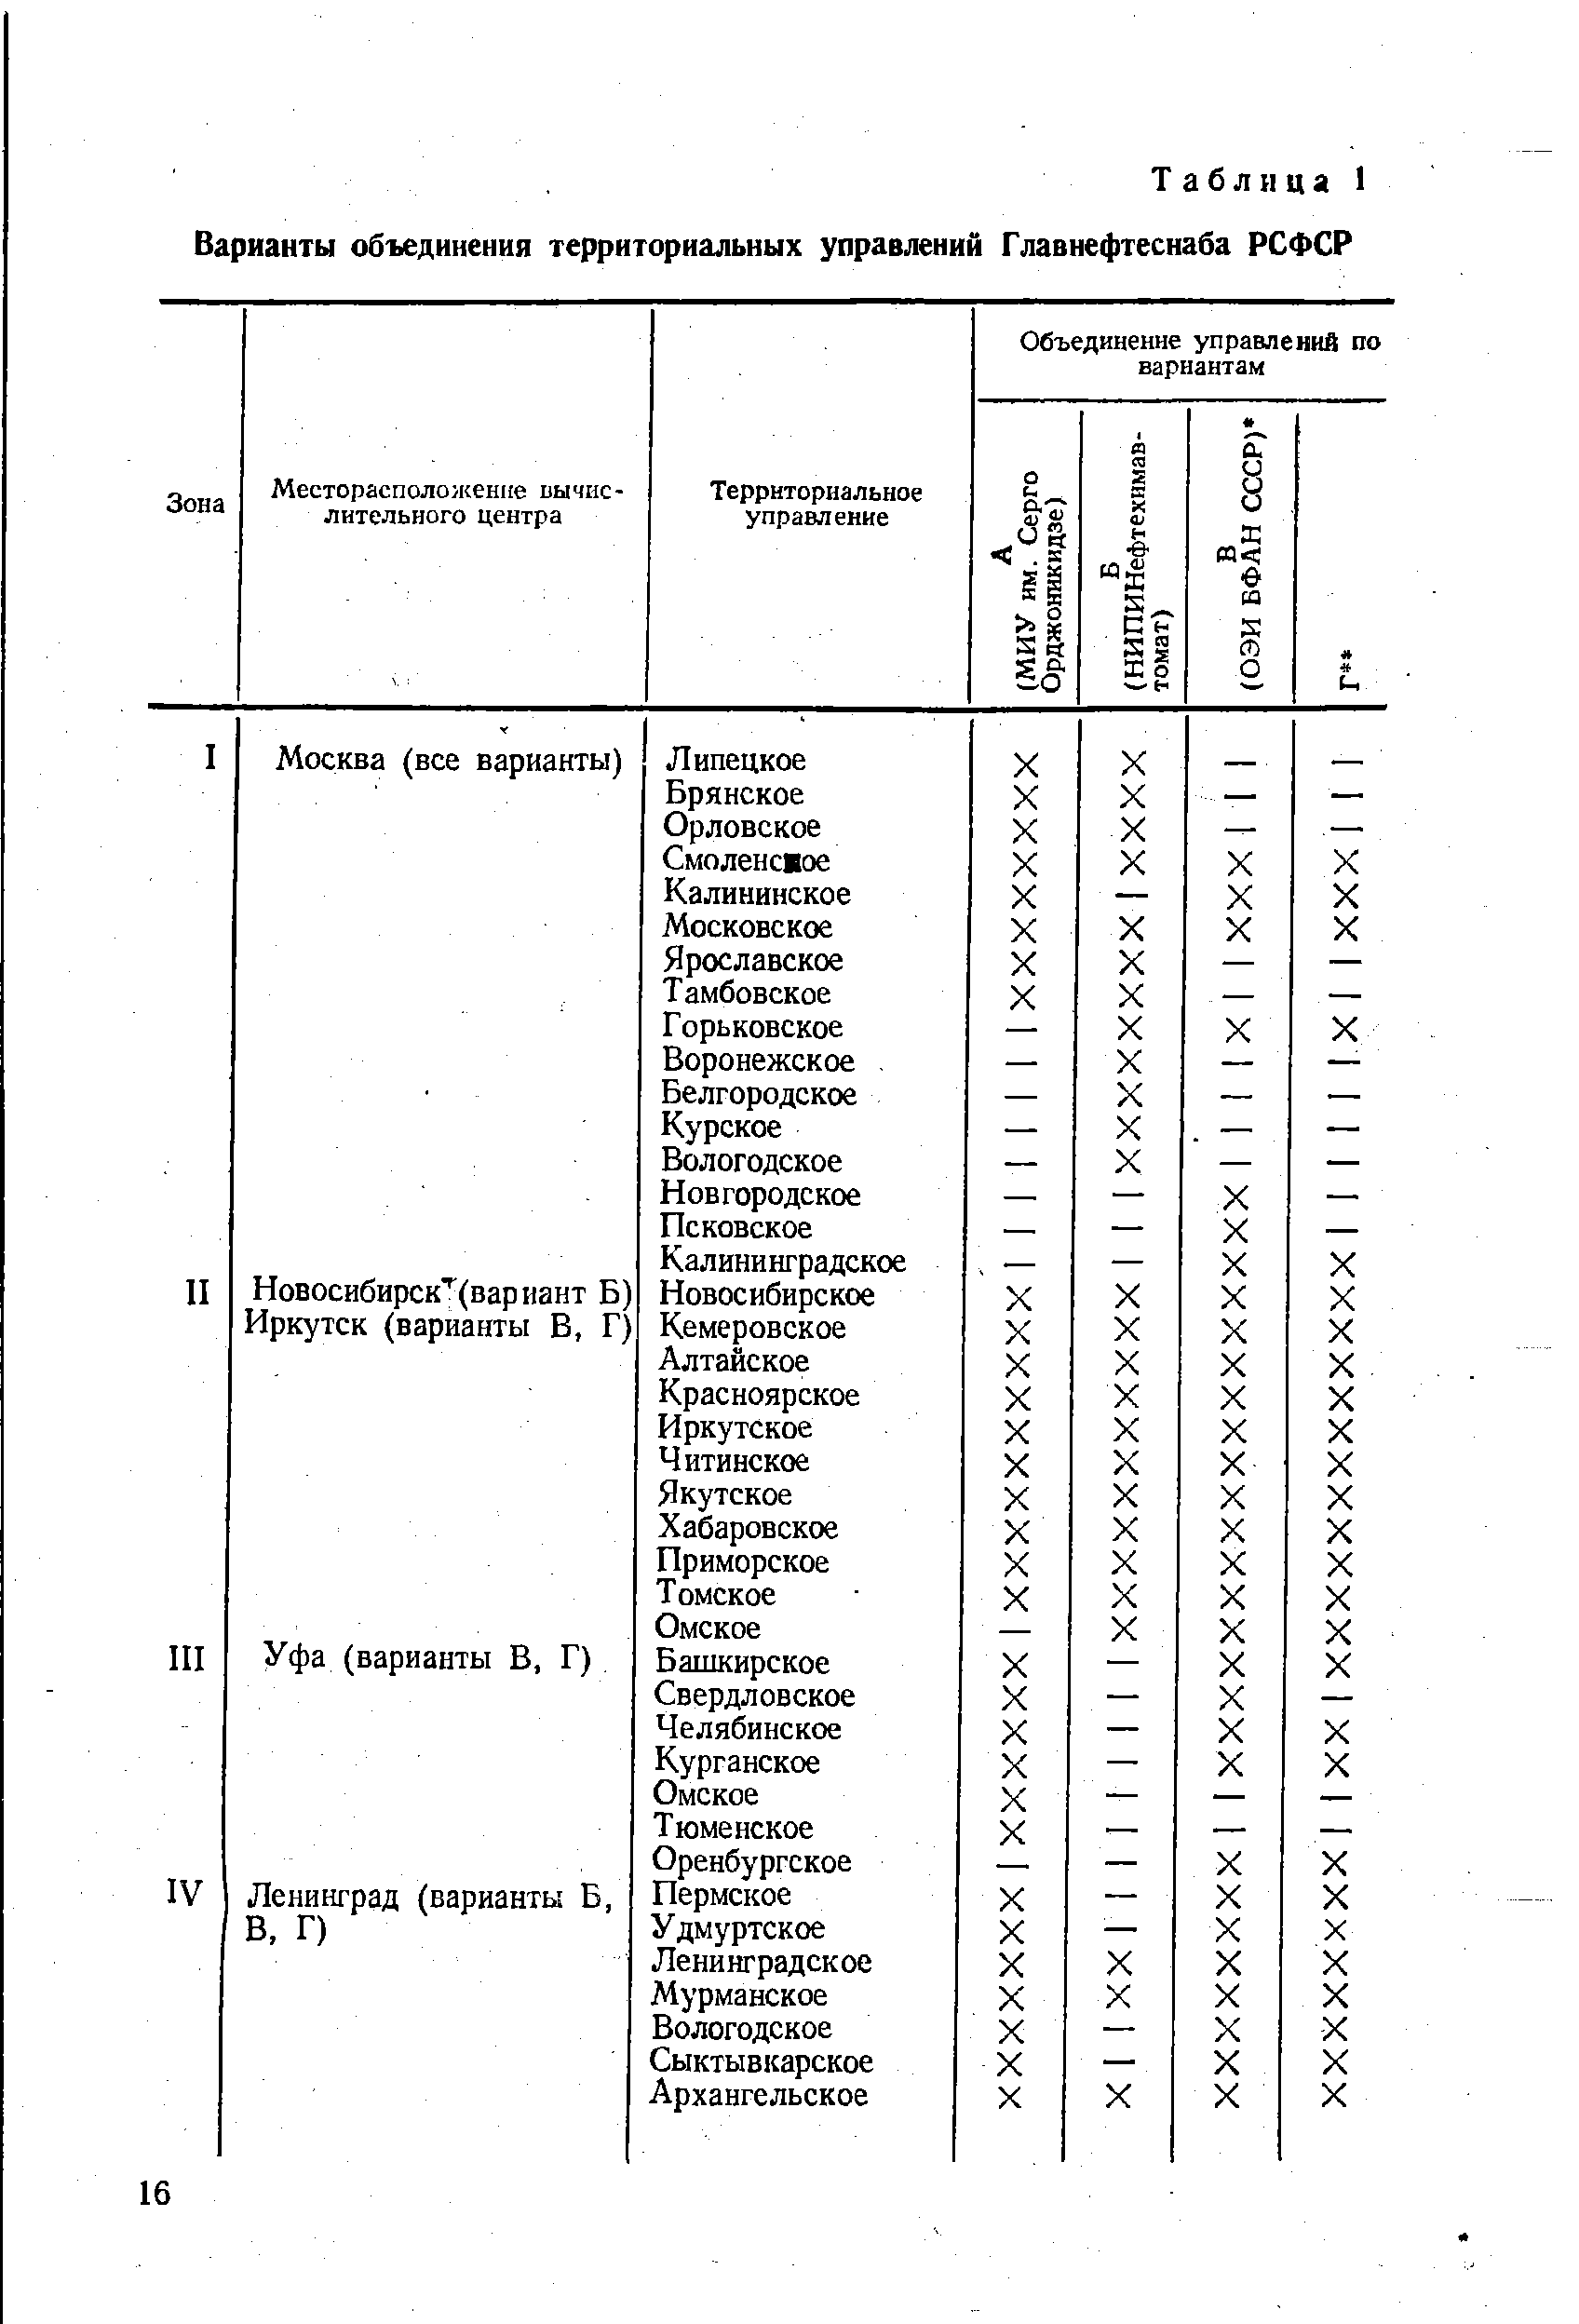 Таблица 1 Варианты объединения территориальных управлений Главнефтеснаба РСФСР
